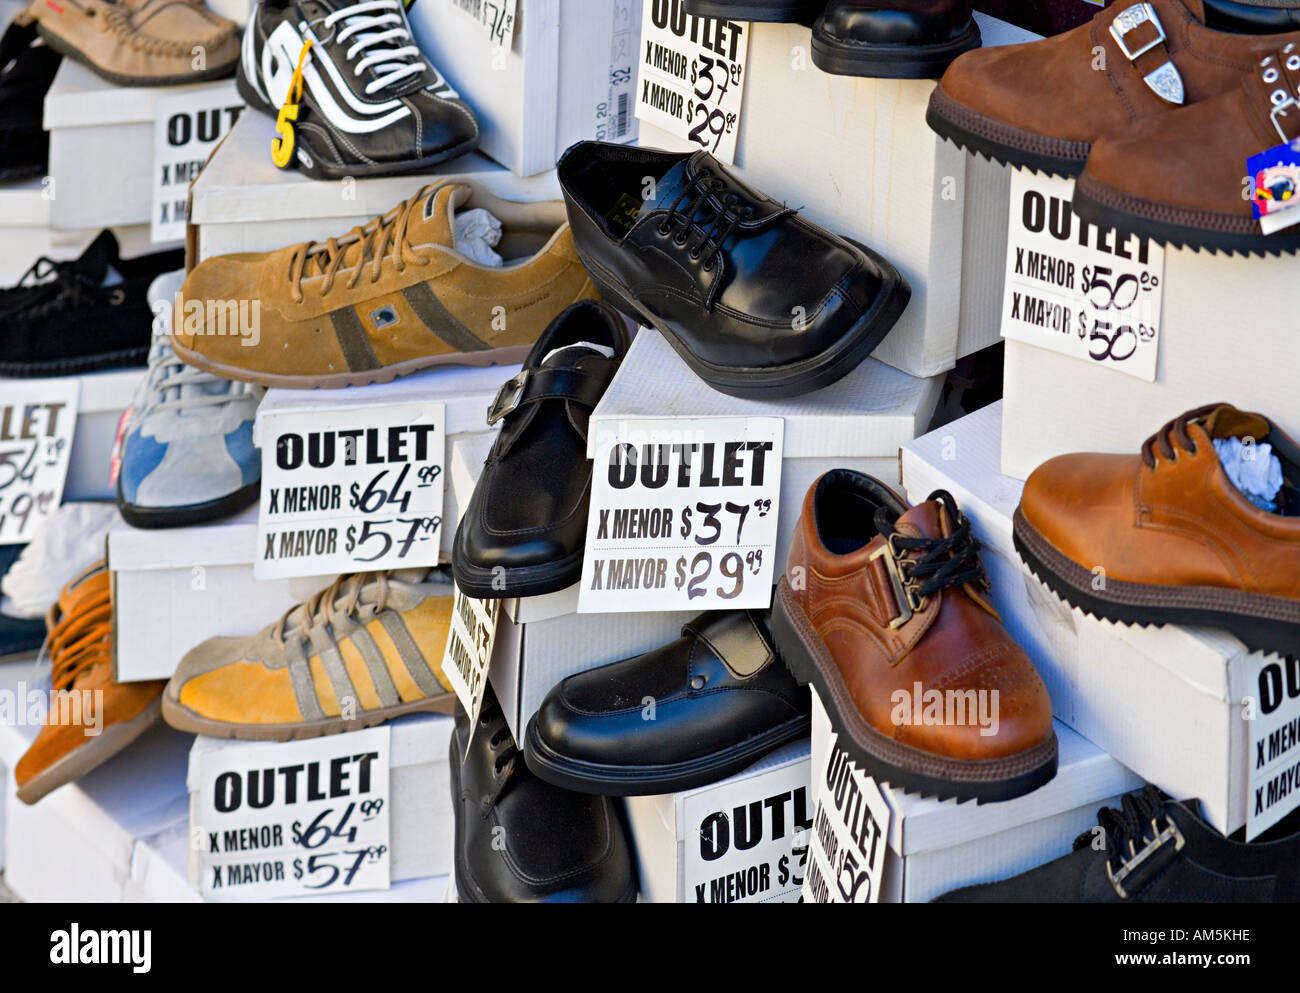 Ausverkauf. Alle Arten von billigen Schuhen in einem Schaufenster ein Outlet-Center in Buenos Aires. Preise in argentinischen Peso; Schilder auf Spanisch. Stockfoto